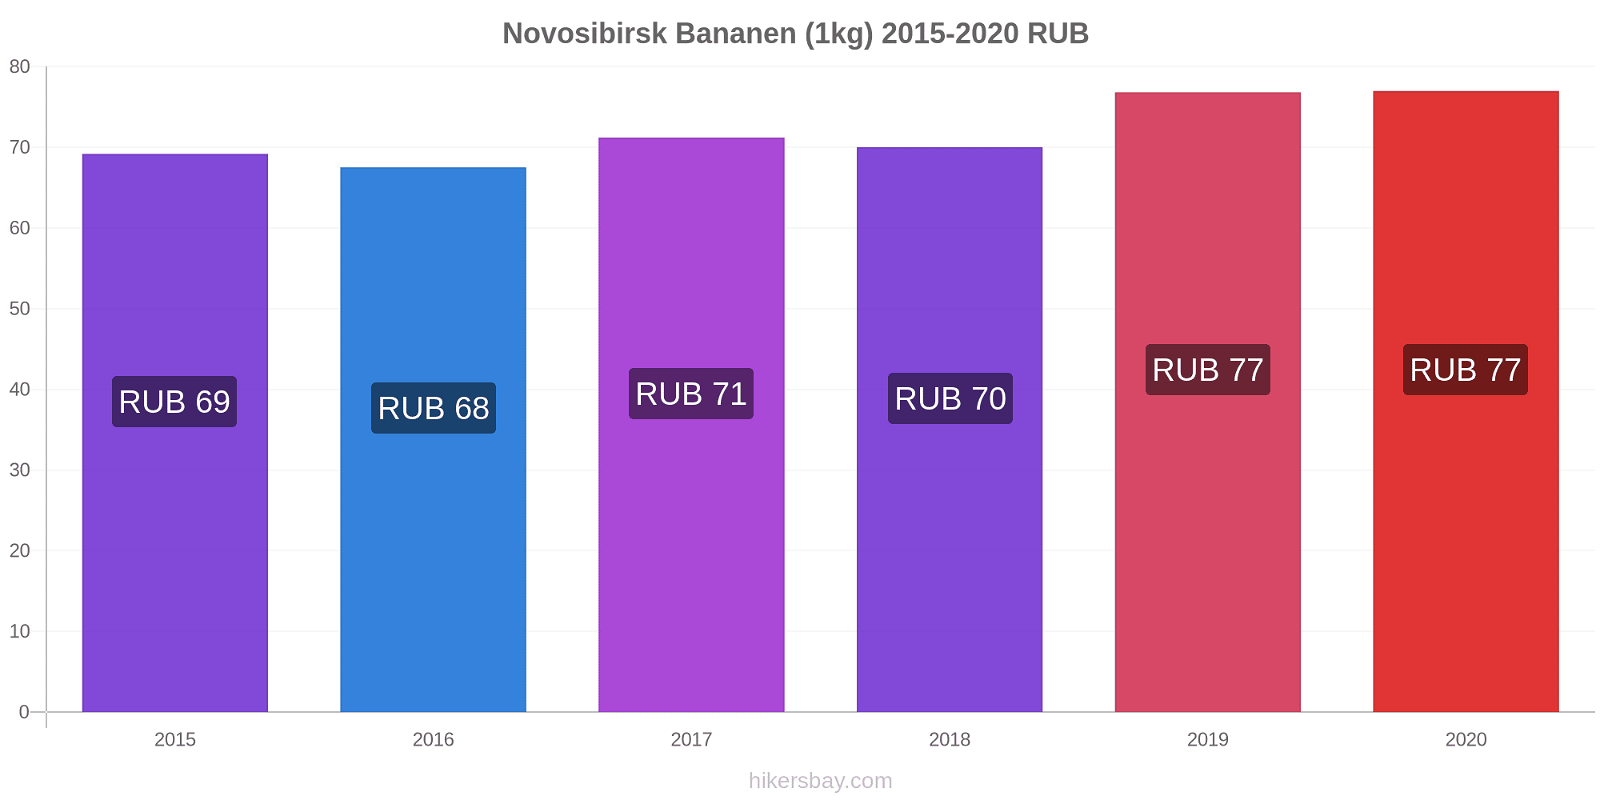 Novosibirsk prijswijzigingen Banaan (1kg) hikersbay.com